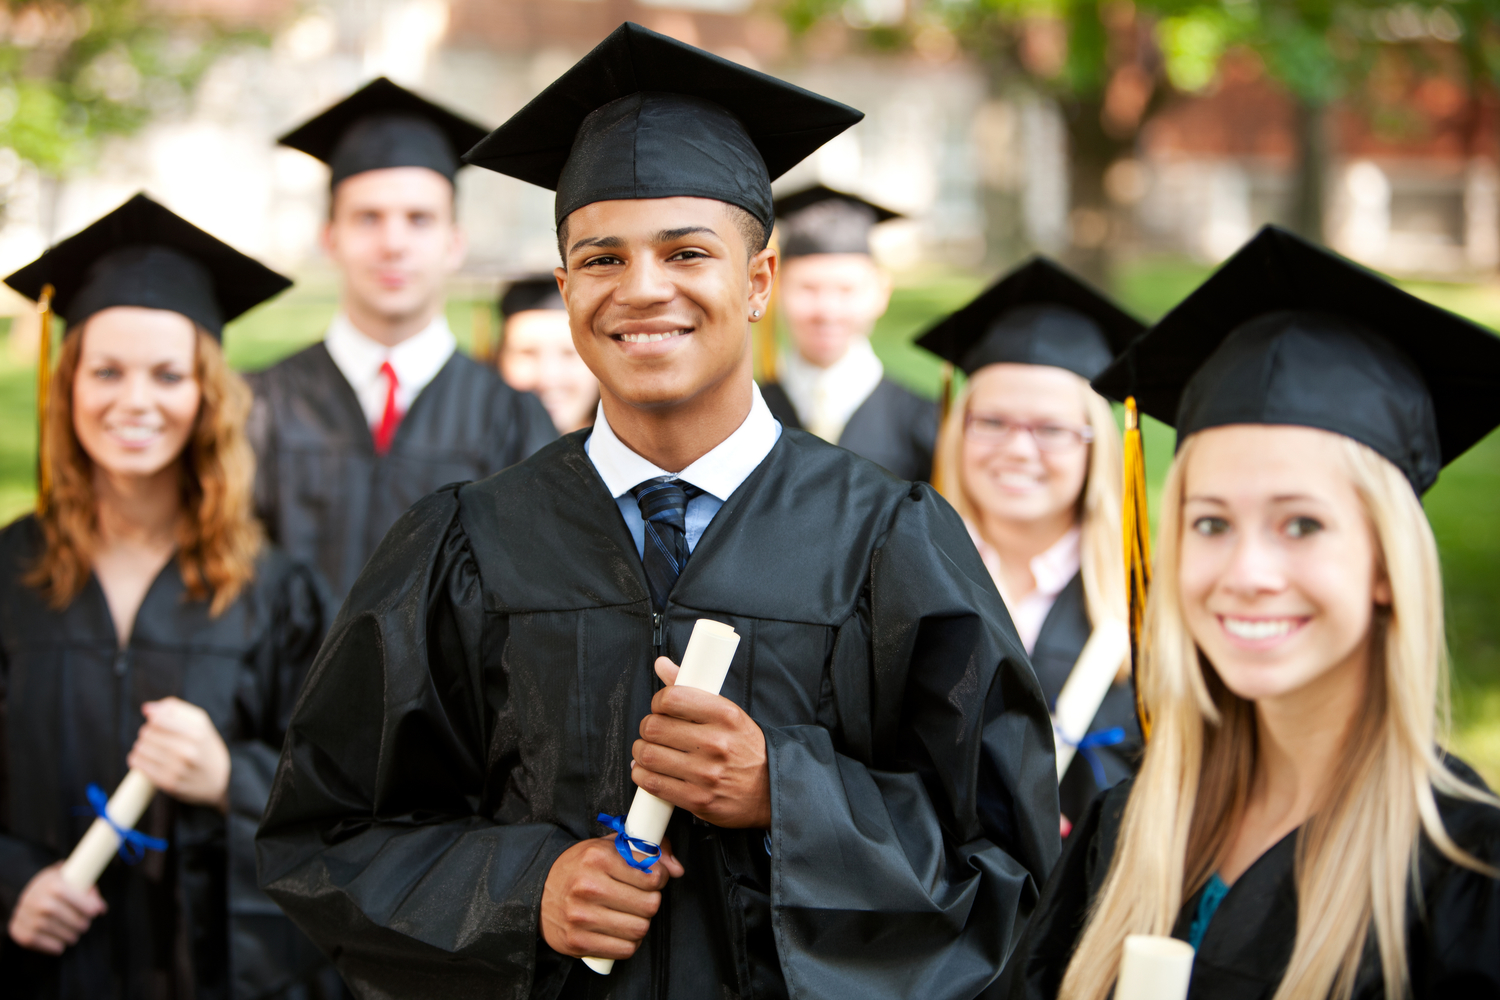 Образование в австралии. структура учёбы в австралии – начальное, среднее, высшее образование